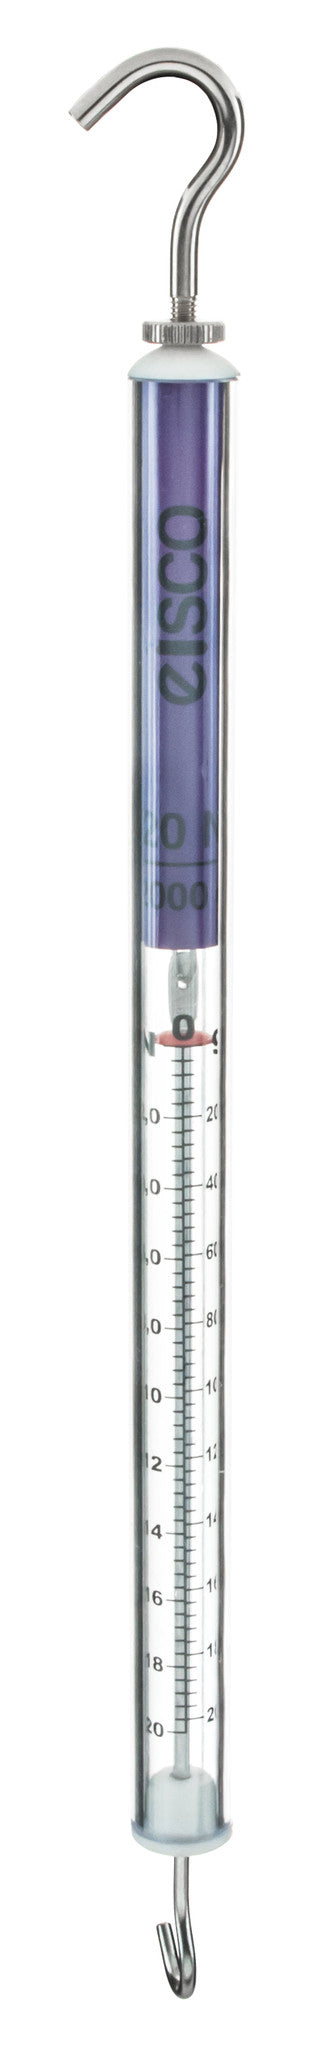 Dynamometer - Premium Range, 20N / 2Kg